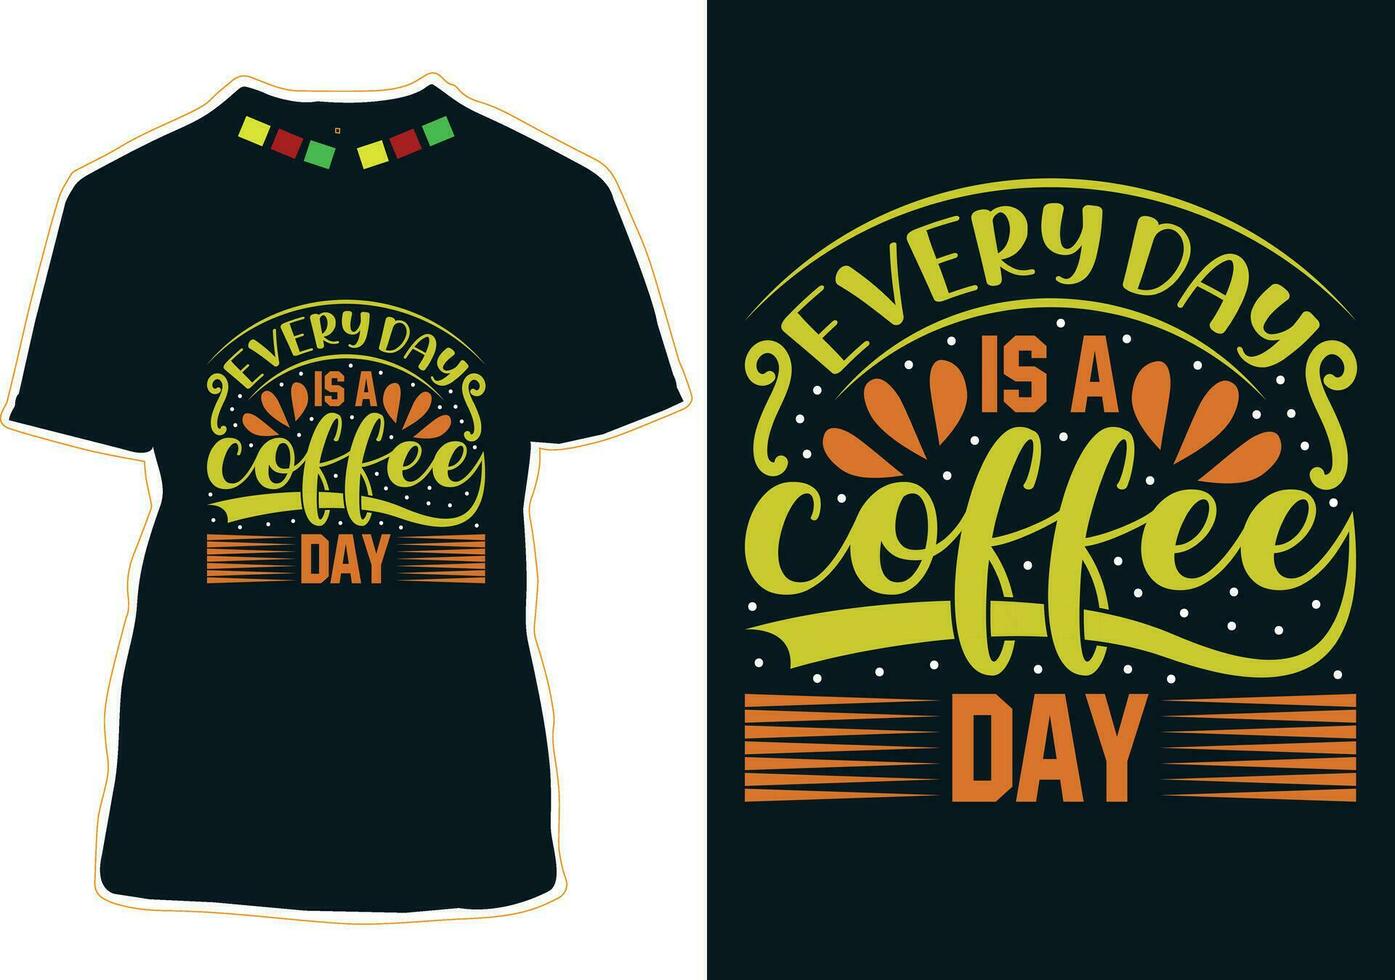 elke dag is een koffie dag, Internationale koffie dag t-shirt ontwerp vector